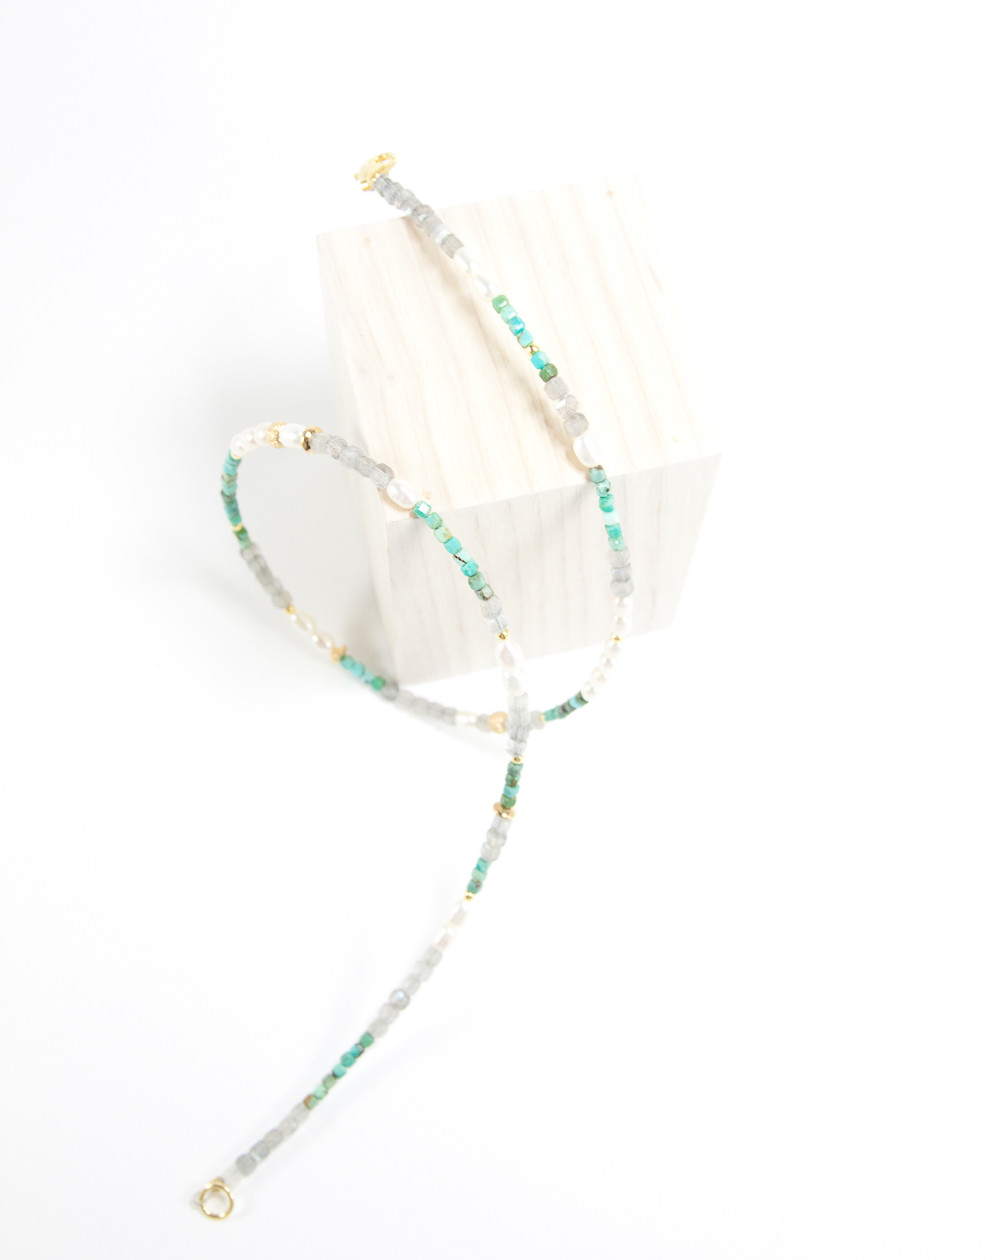 Collier en Turquoise, Labradorite, perles d'eau douce, Sanuk Création, Bayonne